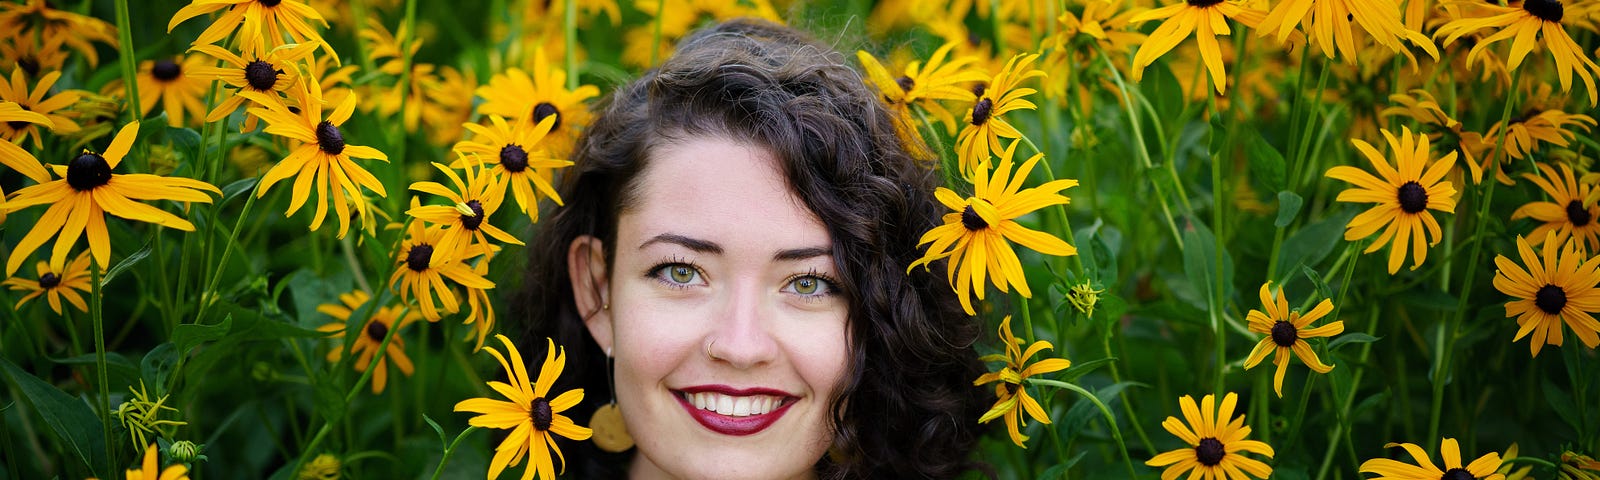 A woman smiles among a garden of daiseys.